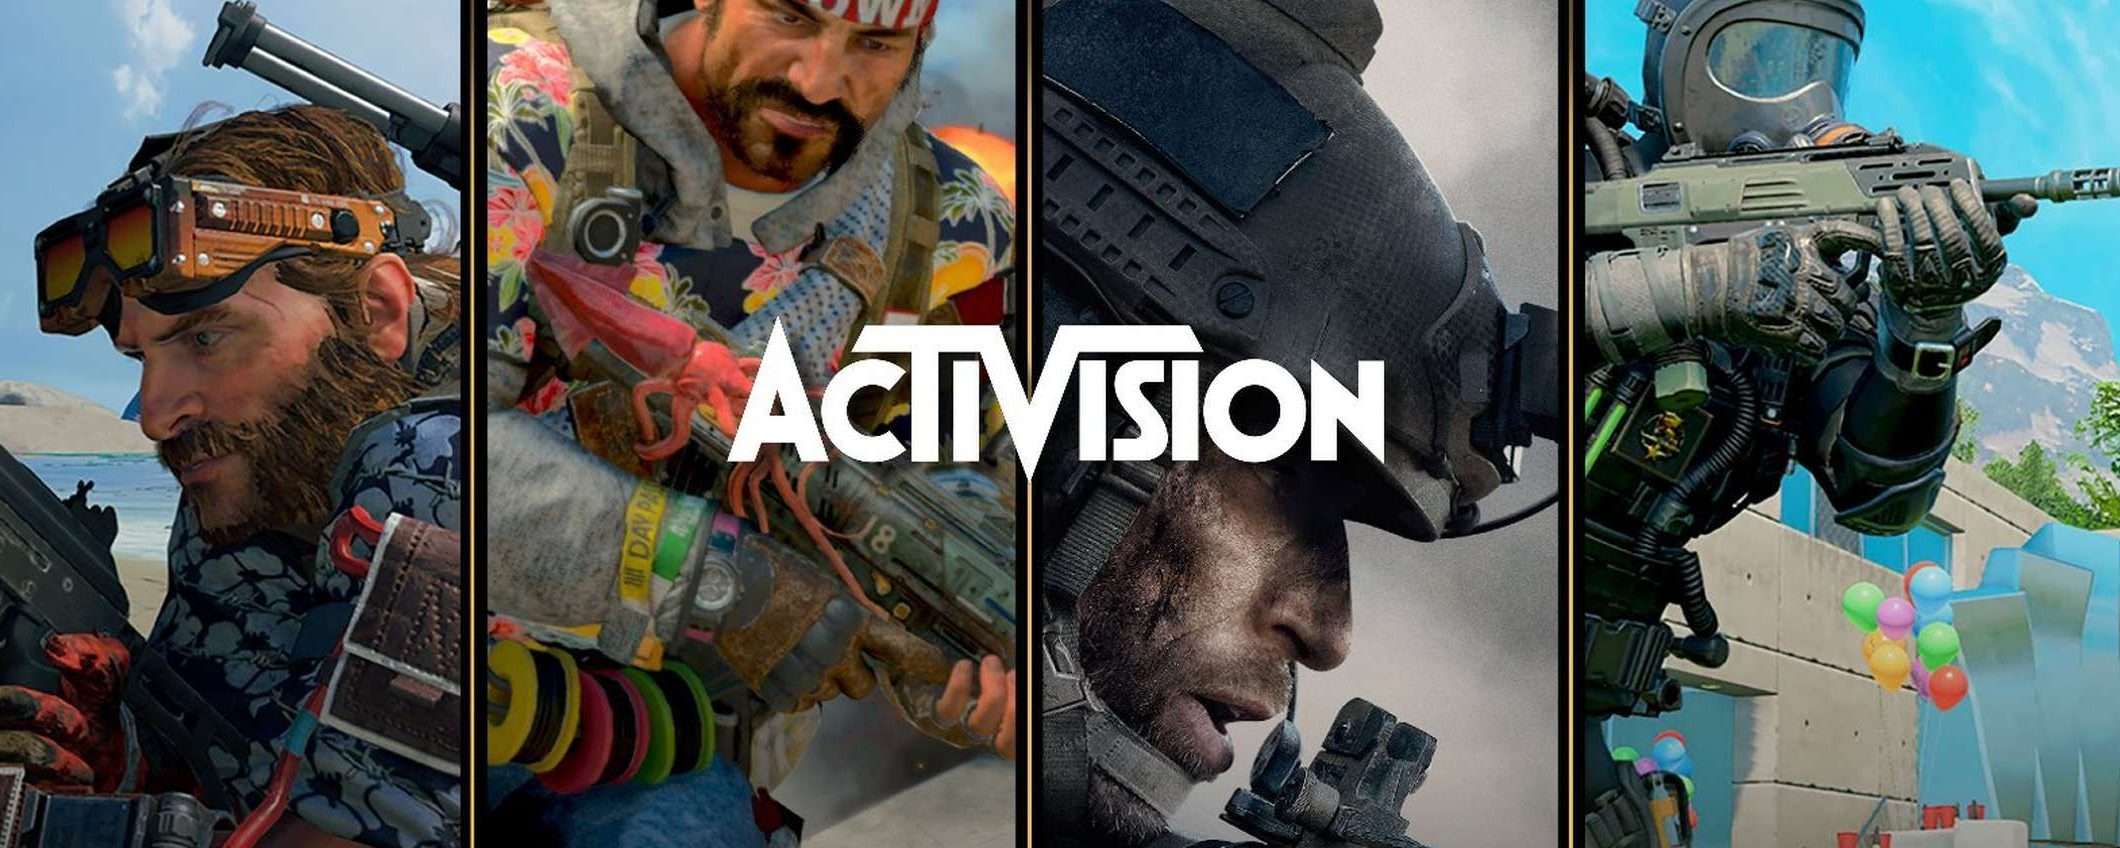 Microsoft: licenziamenti per Activision Blizzard (update)